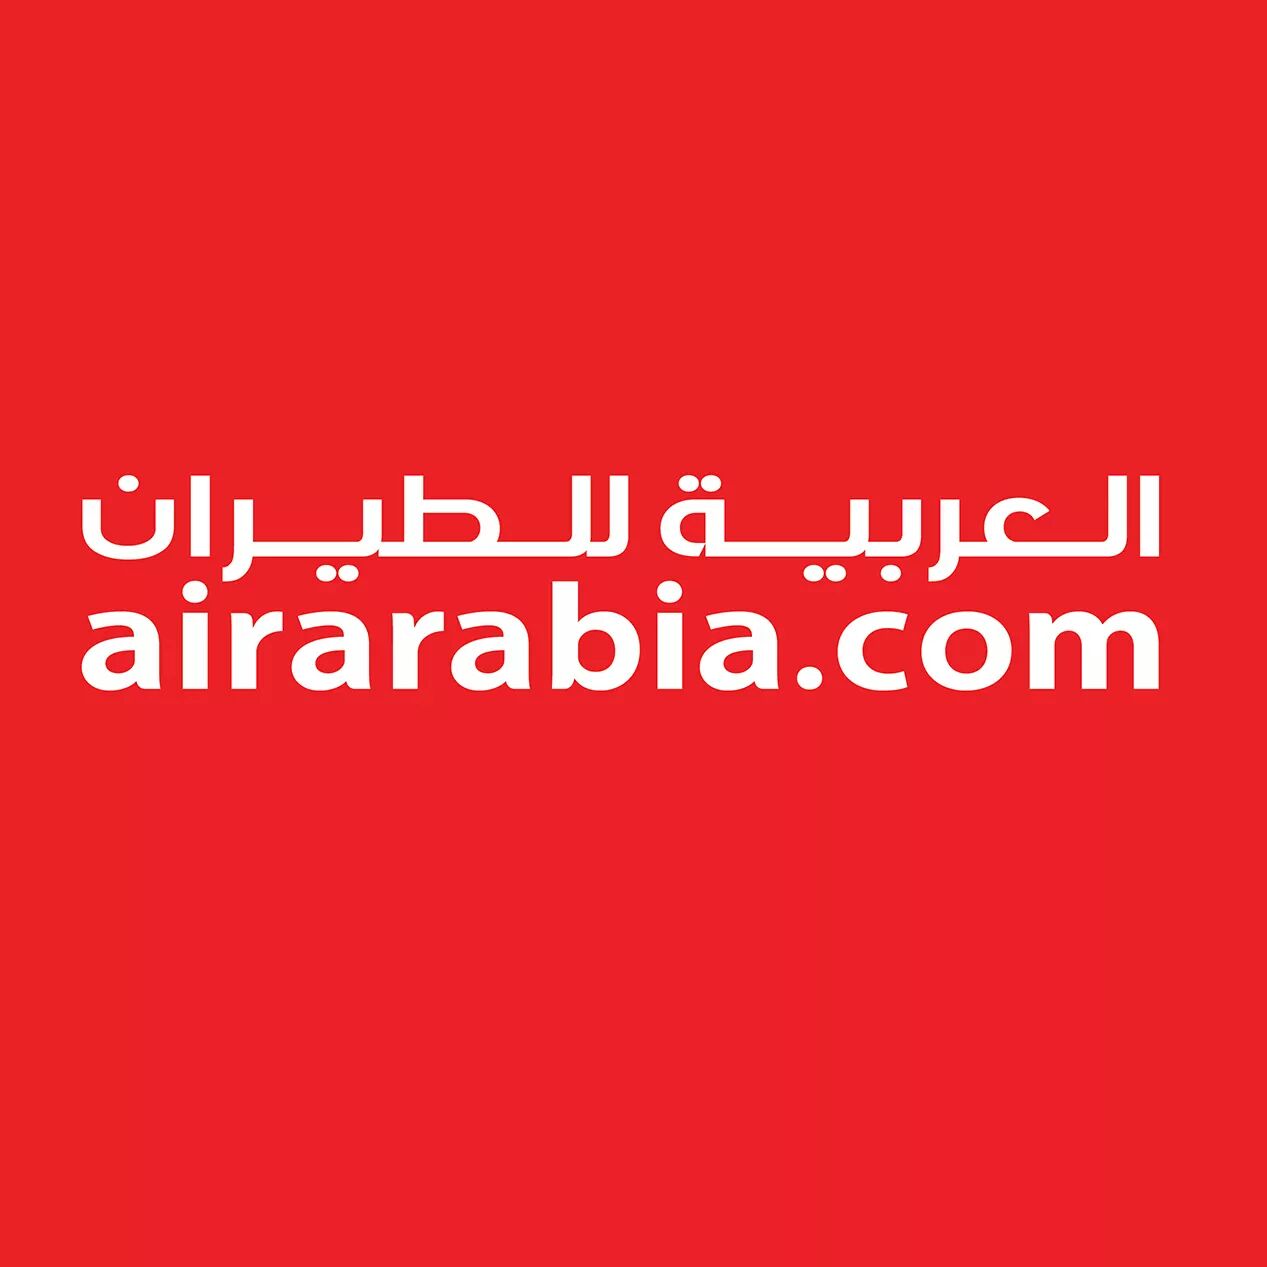 Air arabia на русском. AIRARABIA.com. AIRARABIA logo. Air Arabia. Air Arabia логотип.